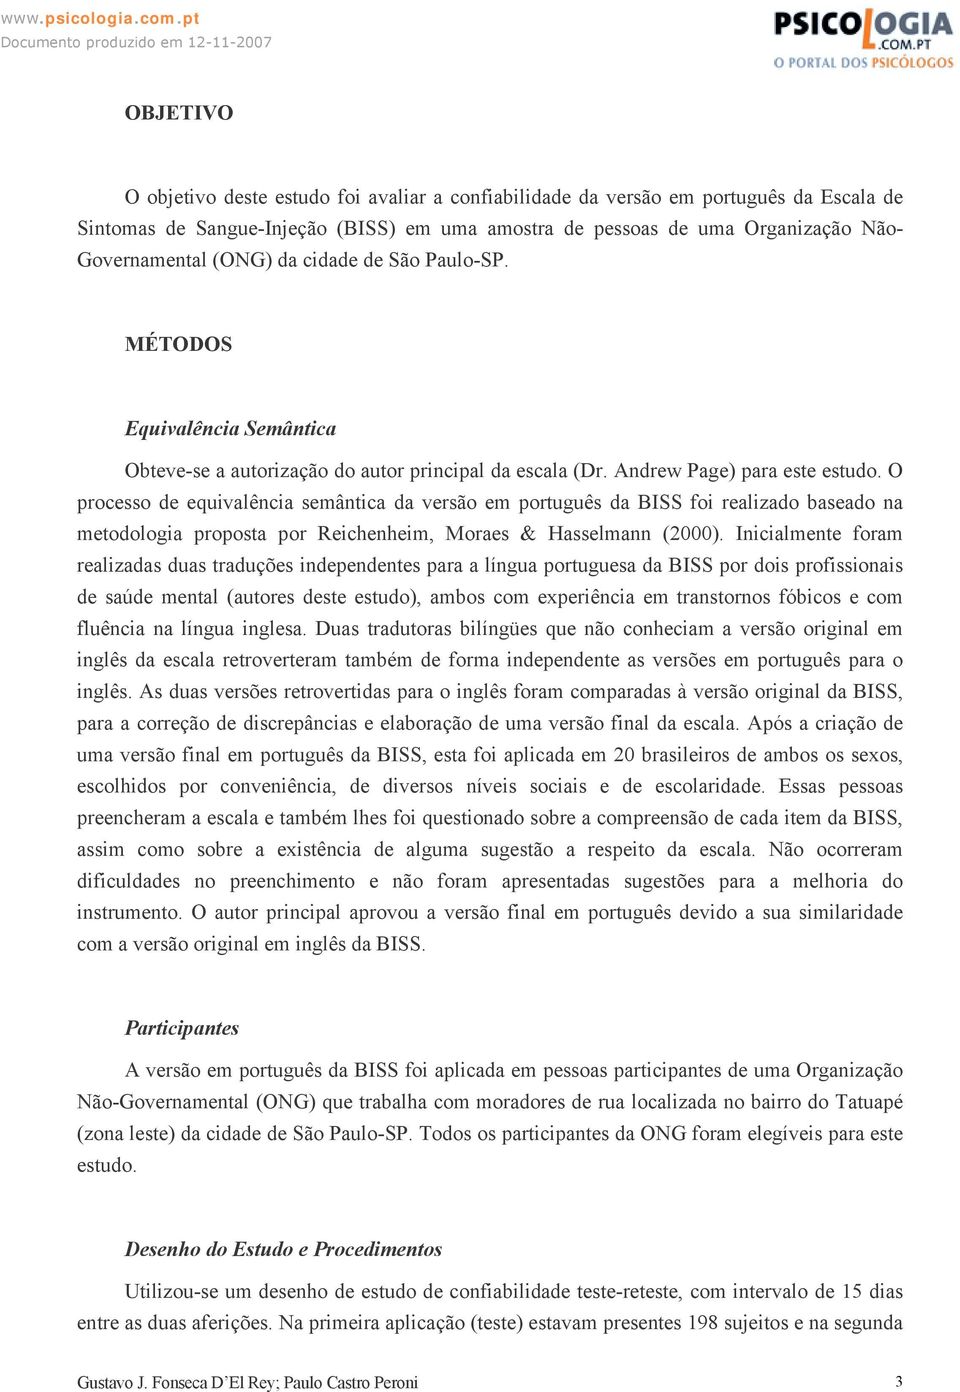 O processo de equivalência semântica da versão em português da BISS foi realizado baseado na metodologia proposta por Reichenheim, Moraes & Hasselmann (2000).